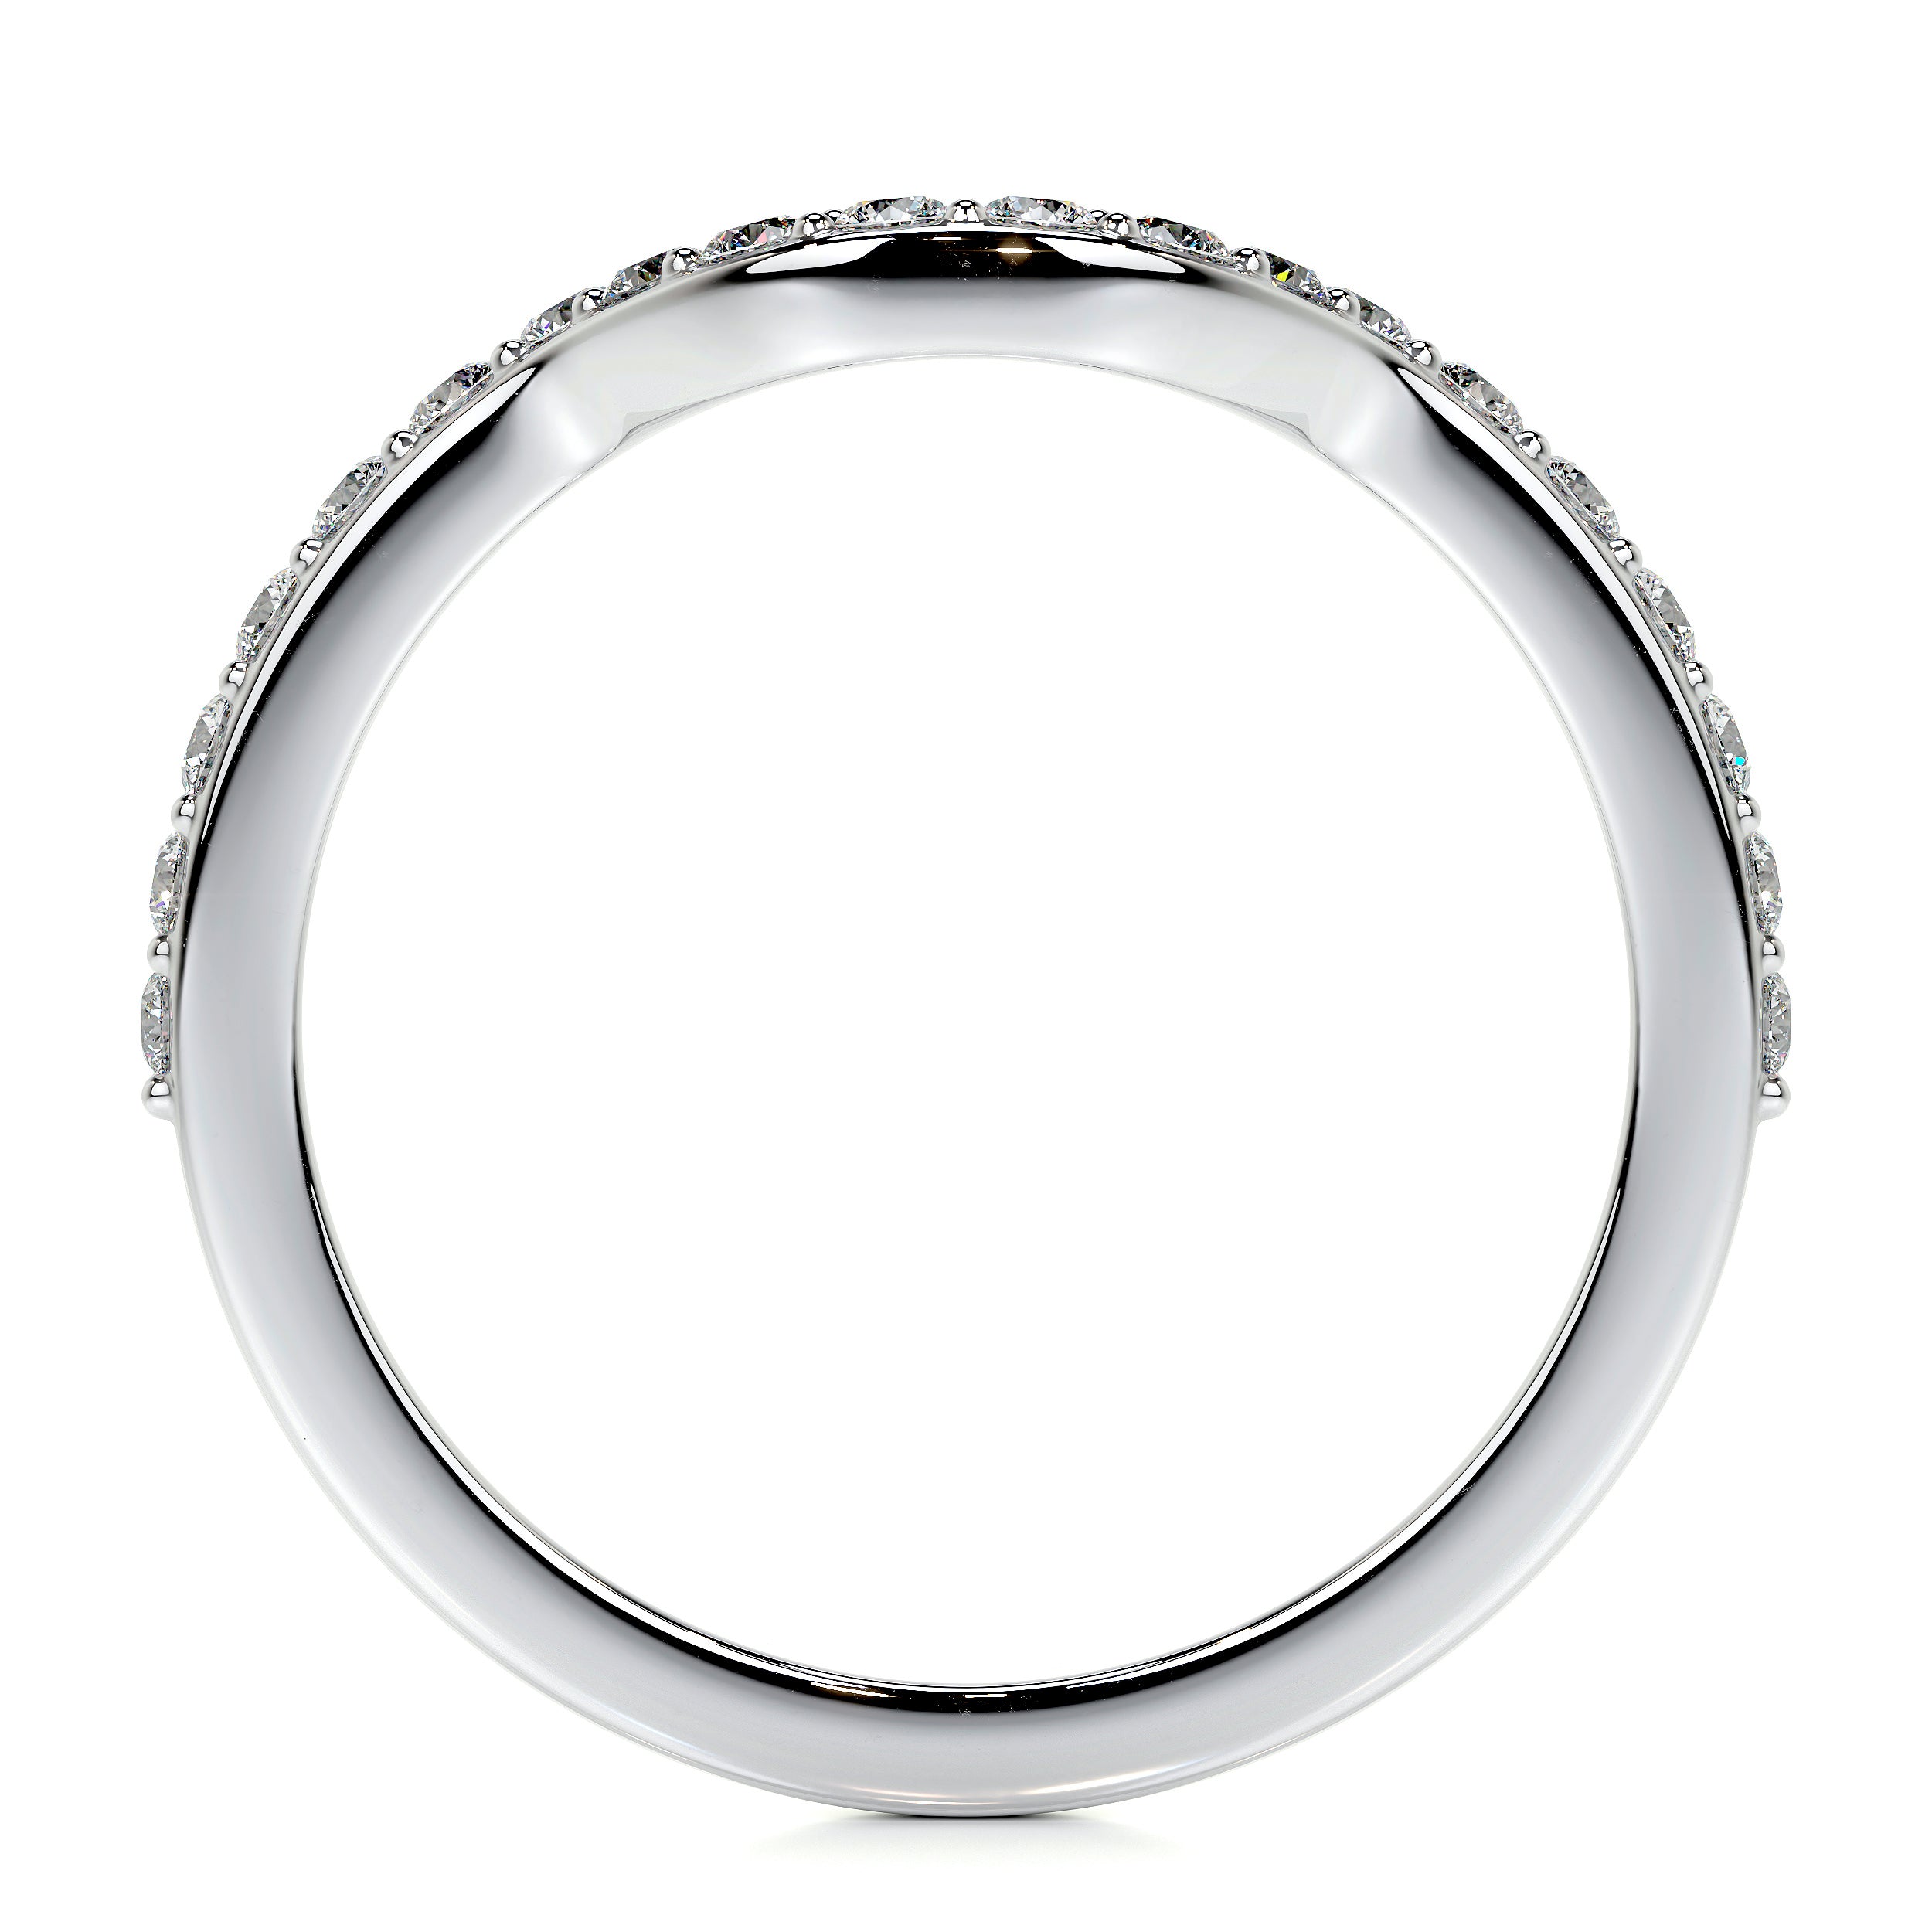 Nina Lab Grown Diamond Wedding Ring   (0.2 Carat) -18K White Gold